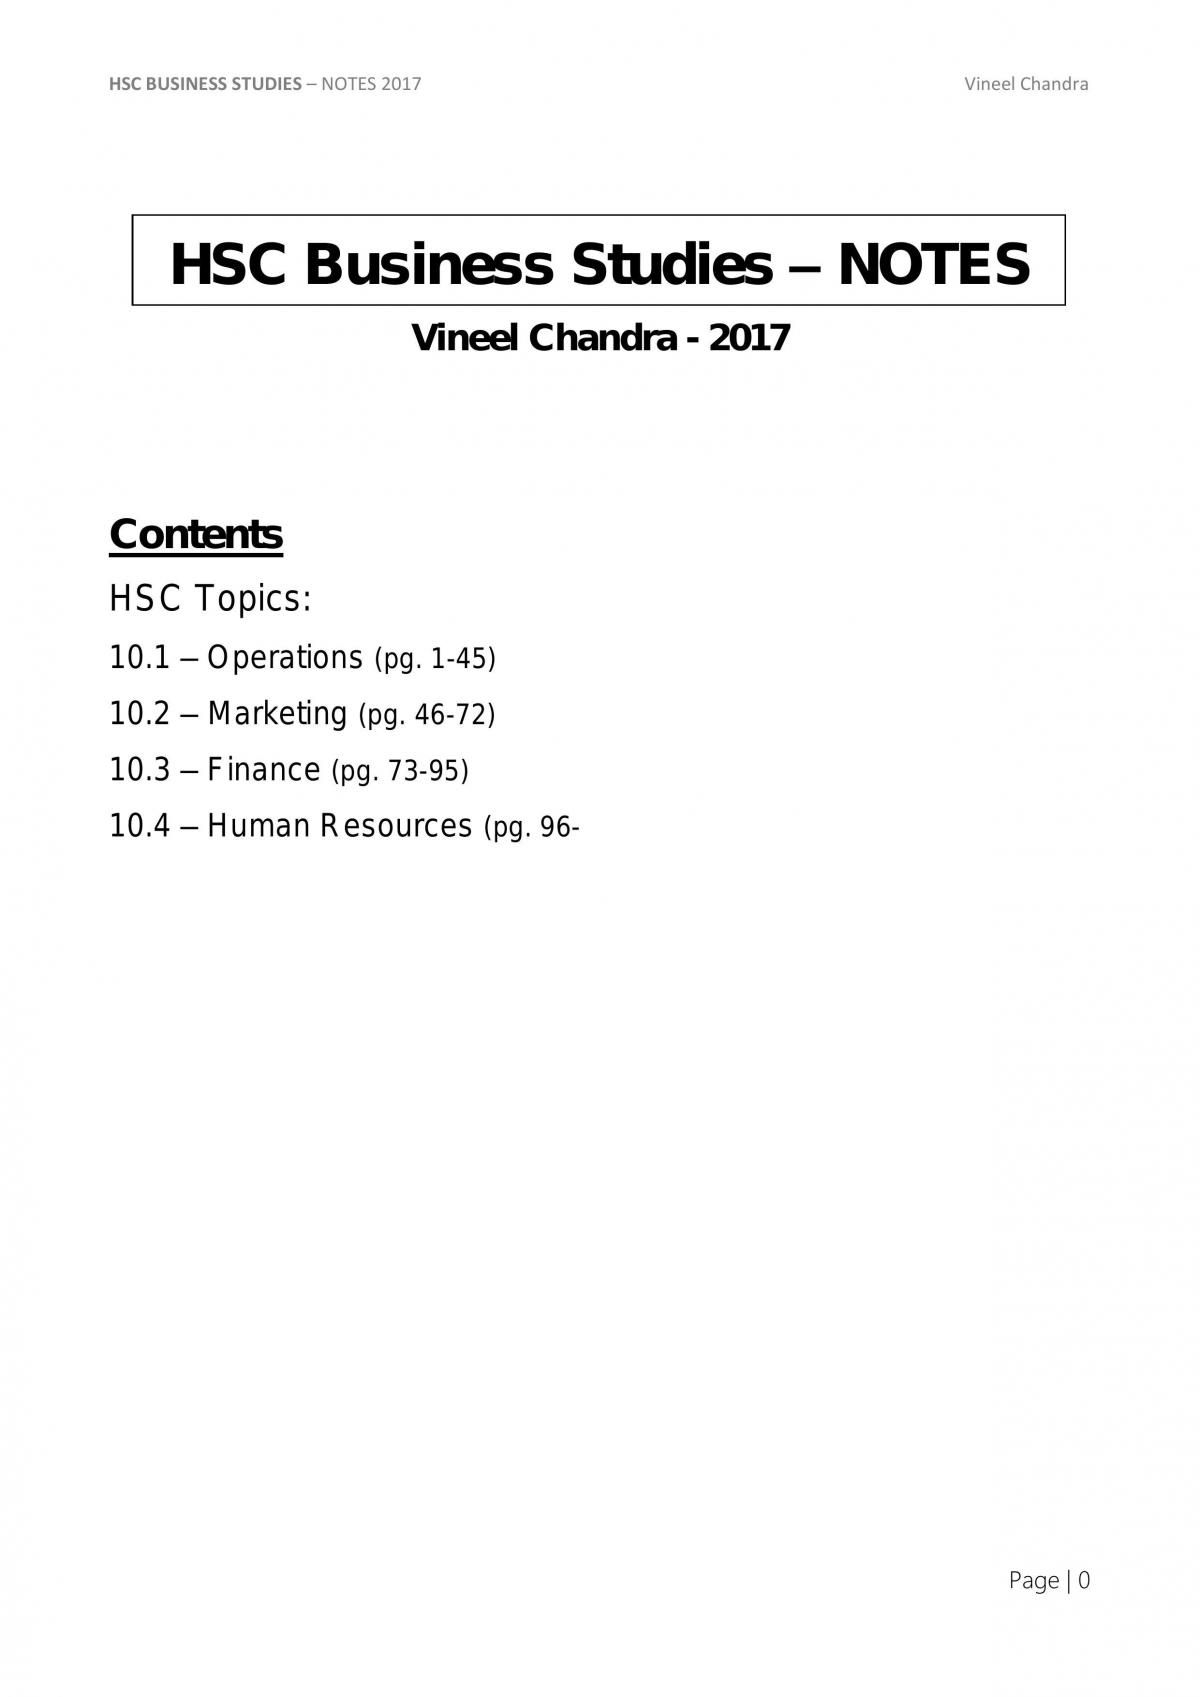 business studies hsc essay questions